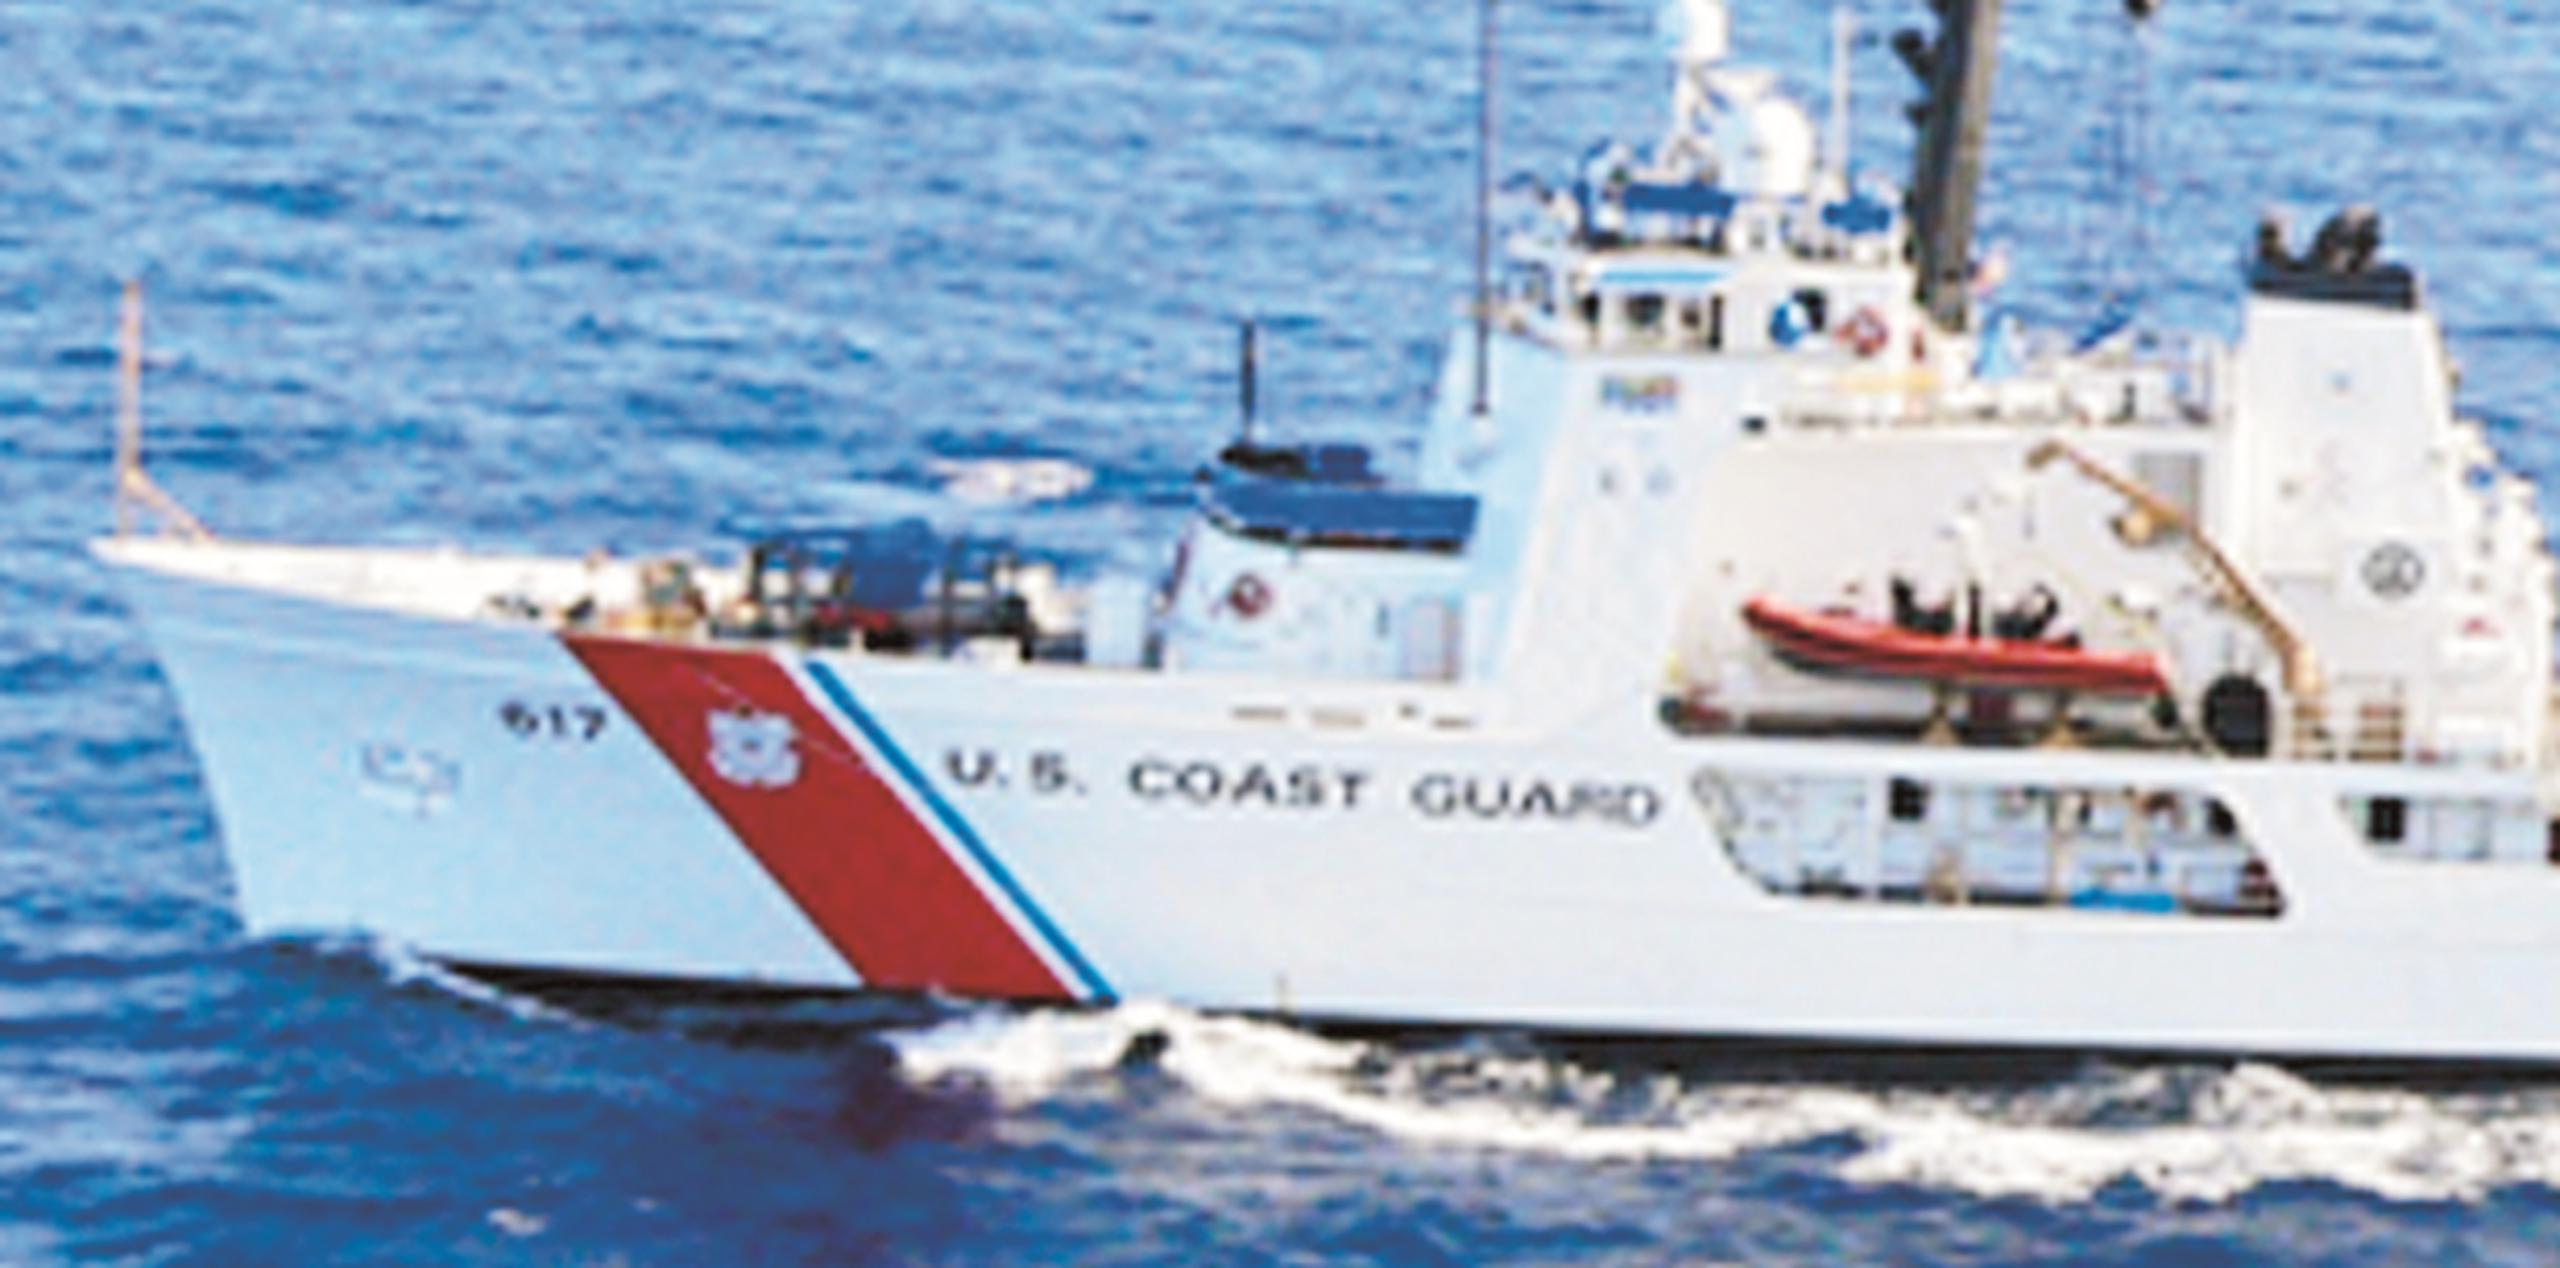 El viernes por la noche un buque notificó a la Guardia Costera sobre el hallazgo de un cadáver flotando a 35 millas náuticas, aproximadamente, del norte de la costa de Hatillo. (Archivo)